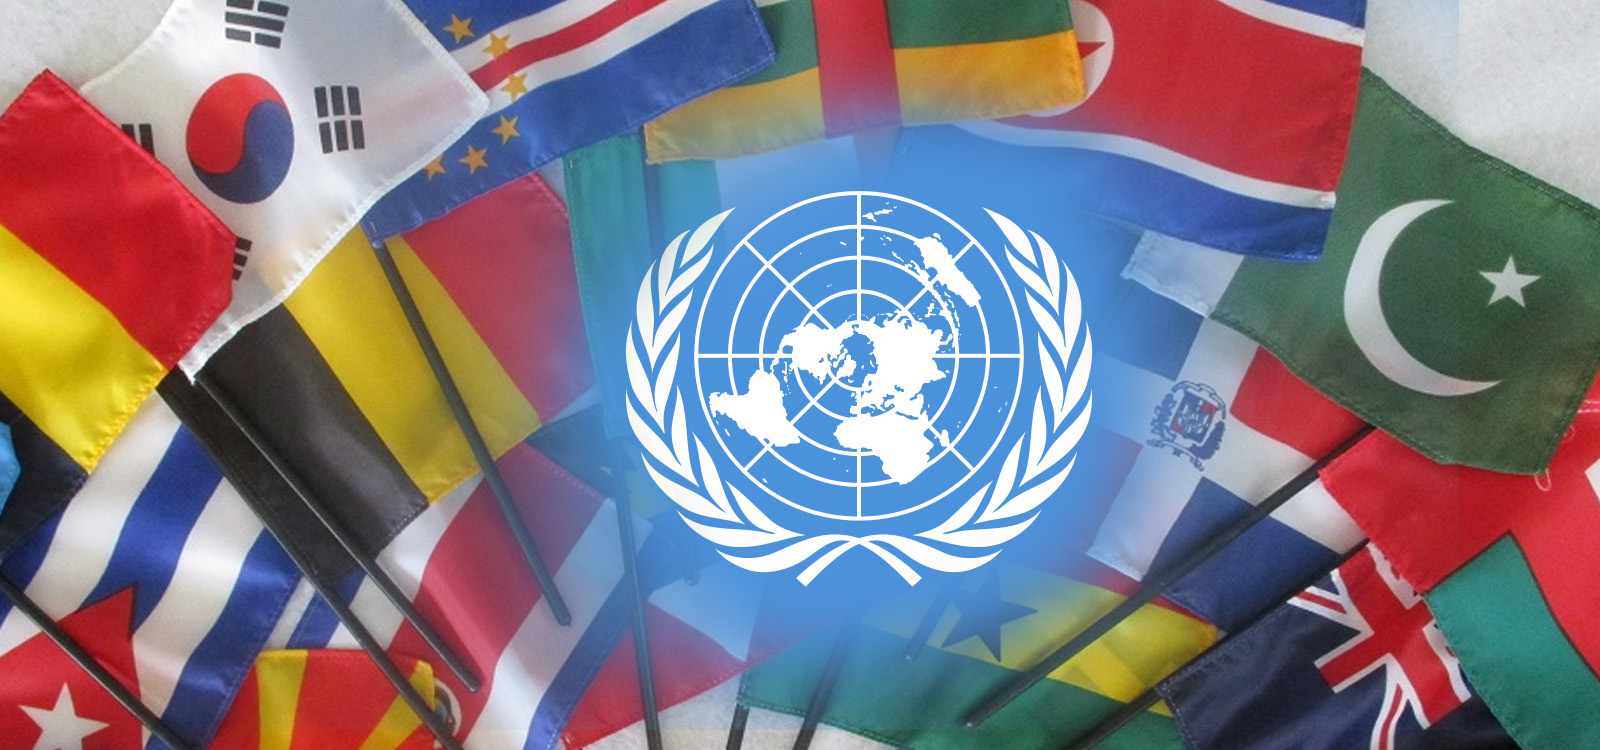 Страны оон 2017. Международные организации ООН. Флаги государств входящих в ООН. 193 Государства в ООН.